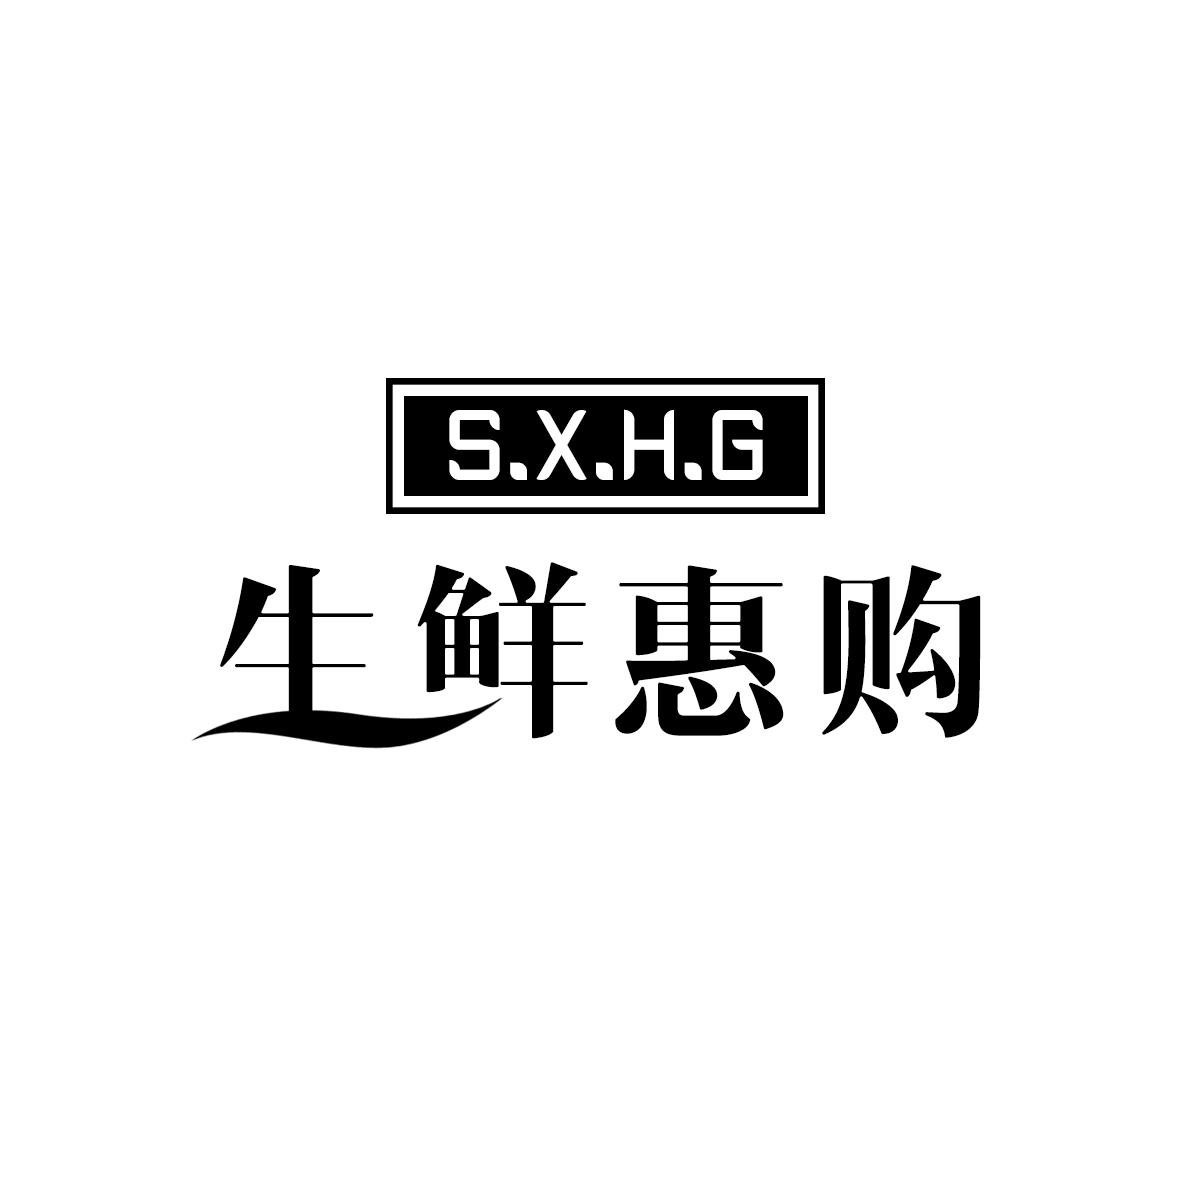 生鲜惠购 S.X.H.G